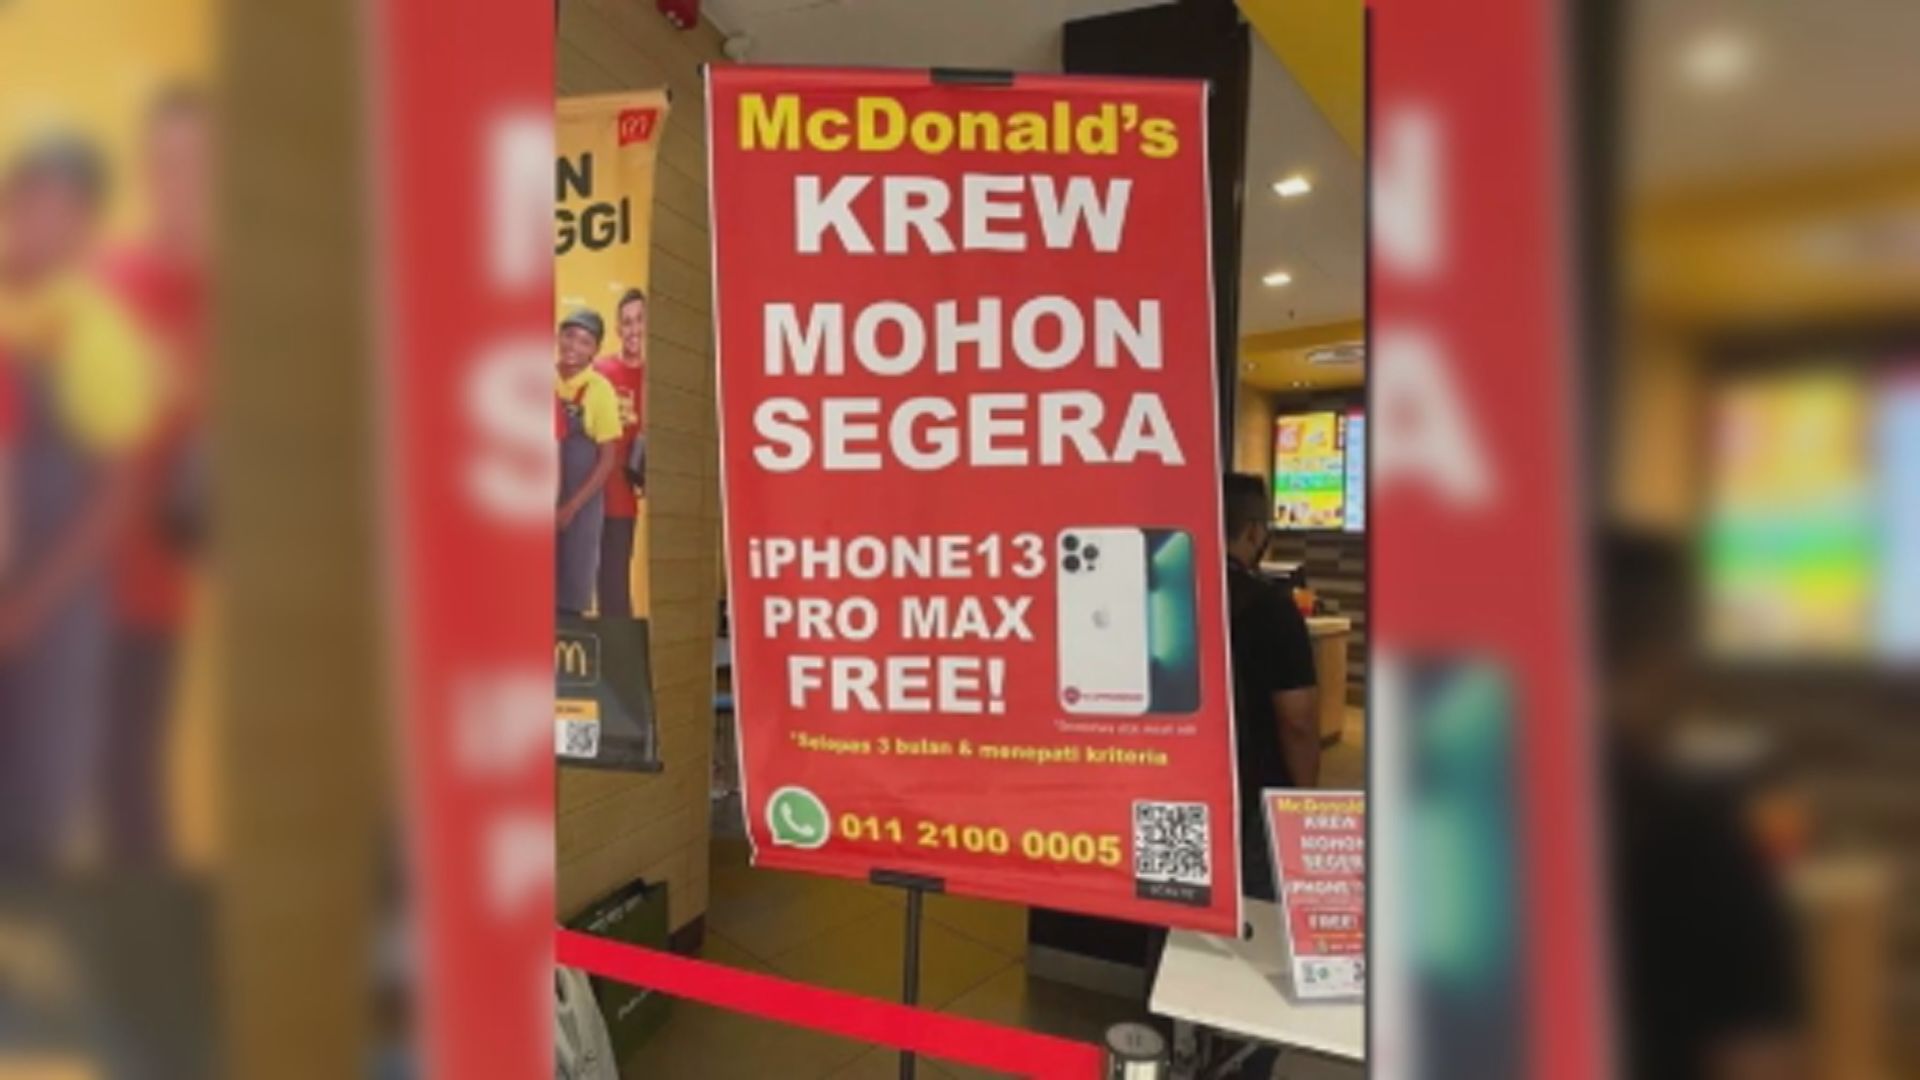 【環球薈報】吉隆坡快餐店向新員工贈送智能手機